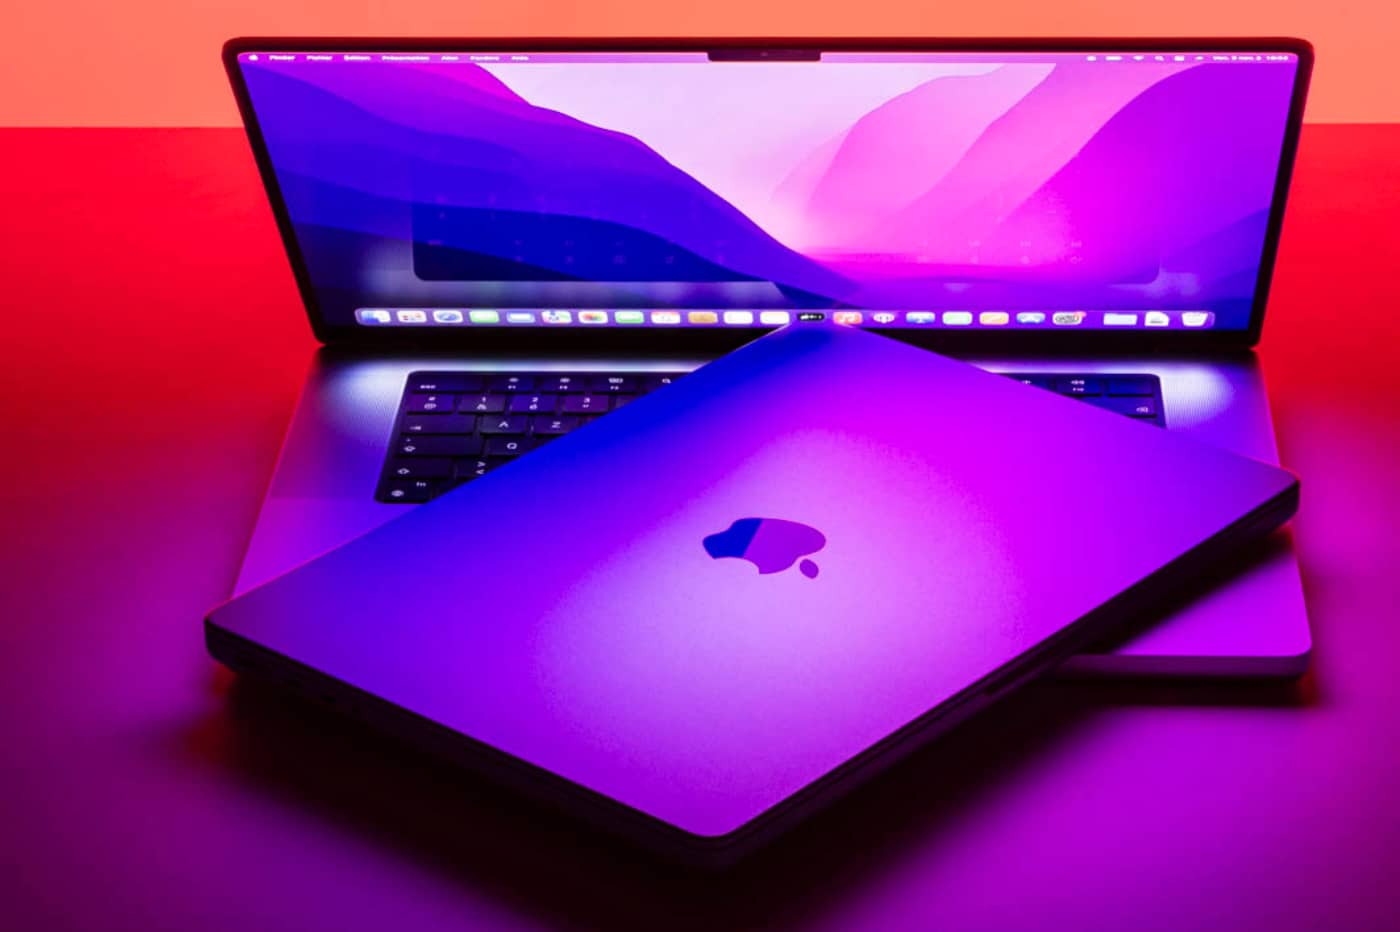 Le MacBook Pro 14 pouces équipé d'un M1 Pro et sorti en octobre 2021.